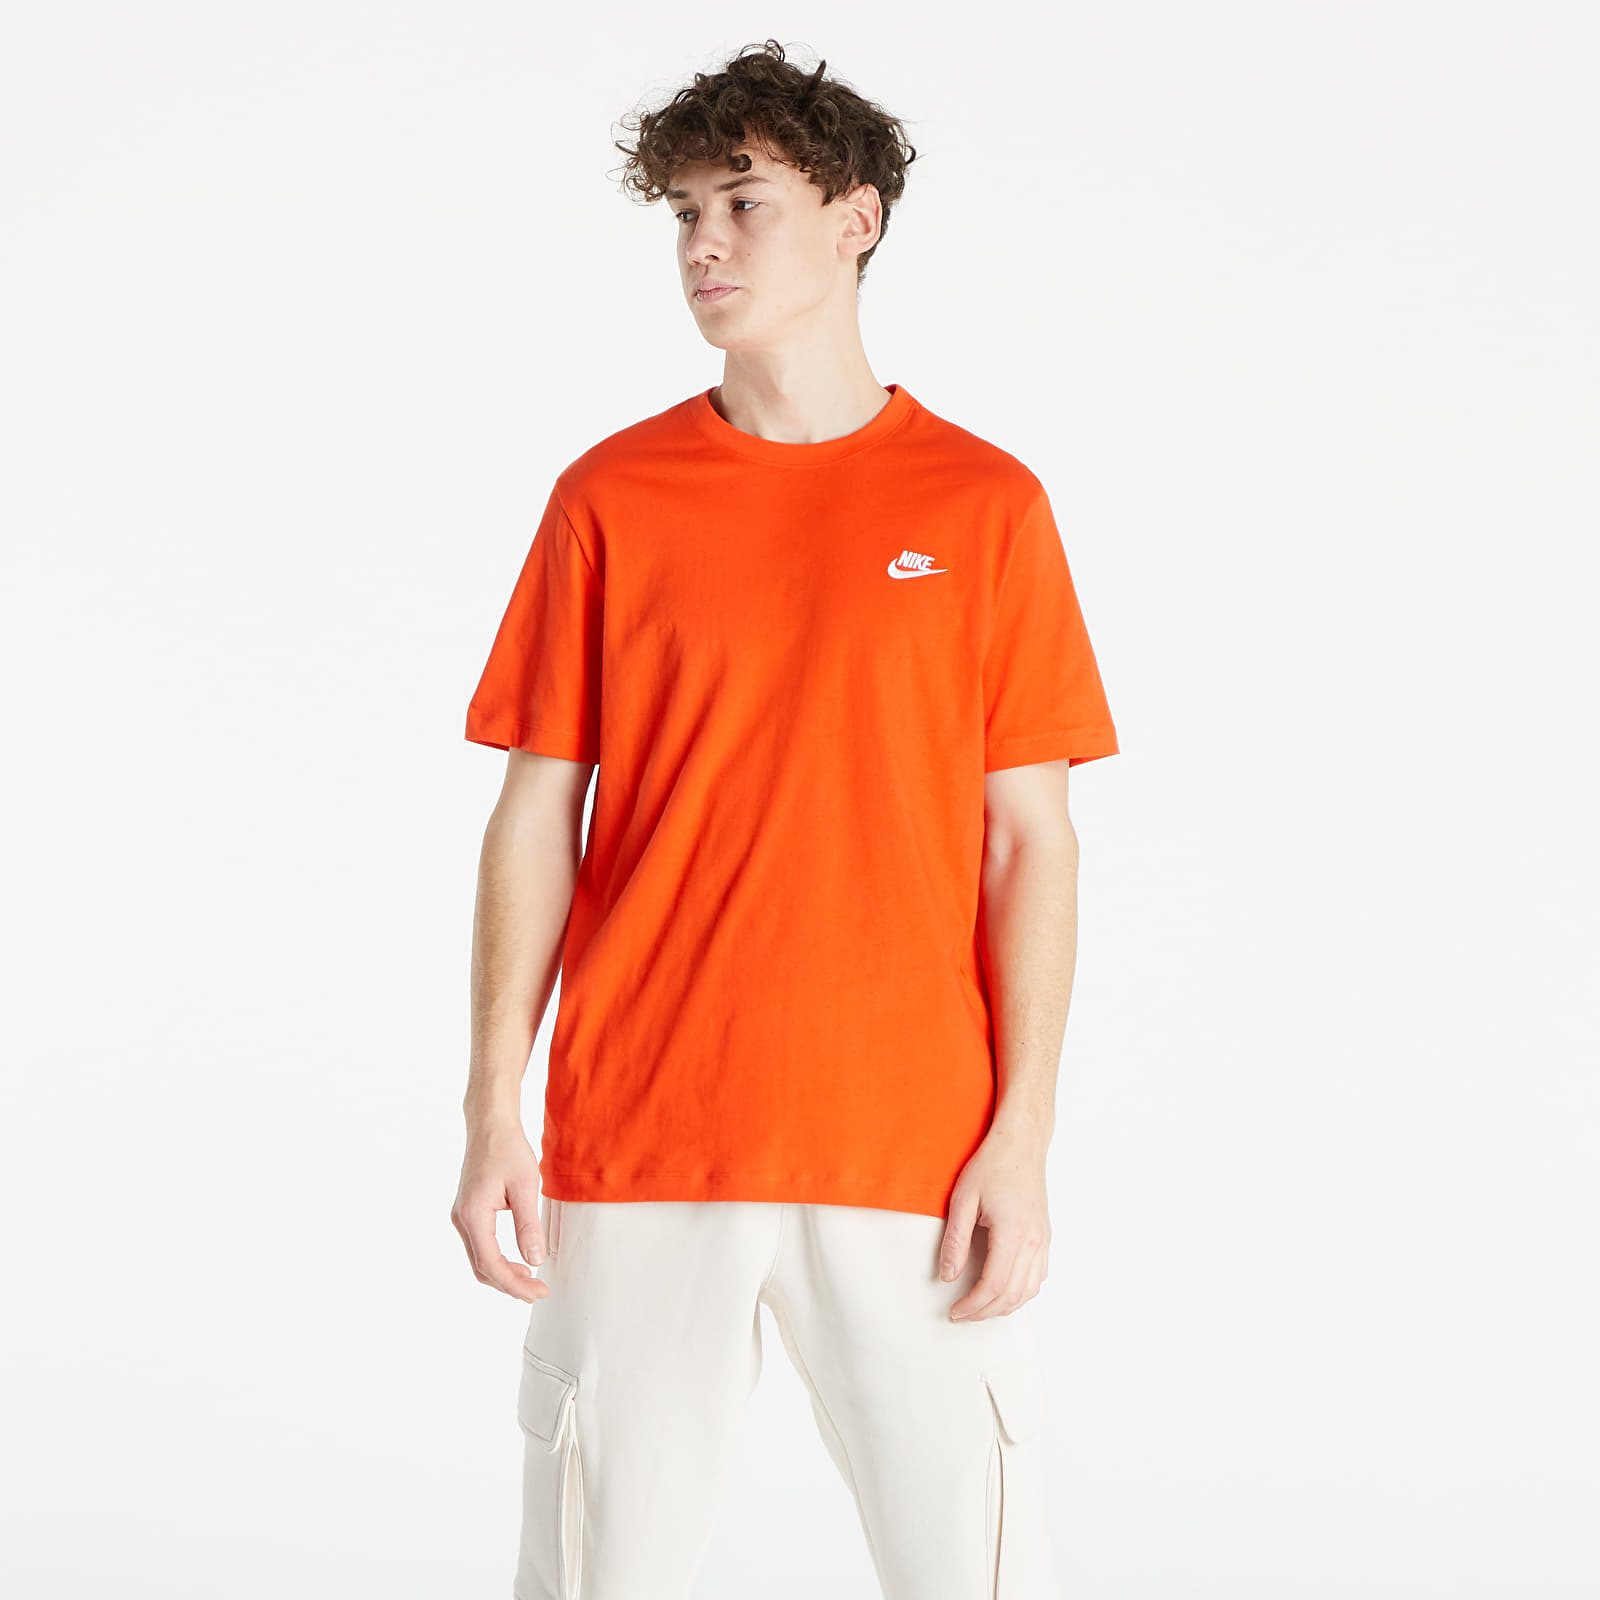  Μπλούζες Nike Sportswear Club Tee Orange